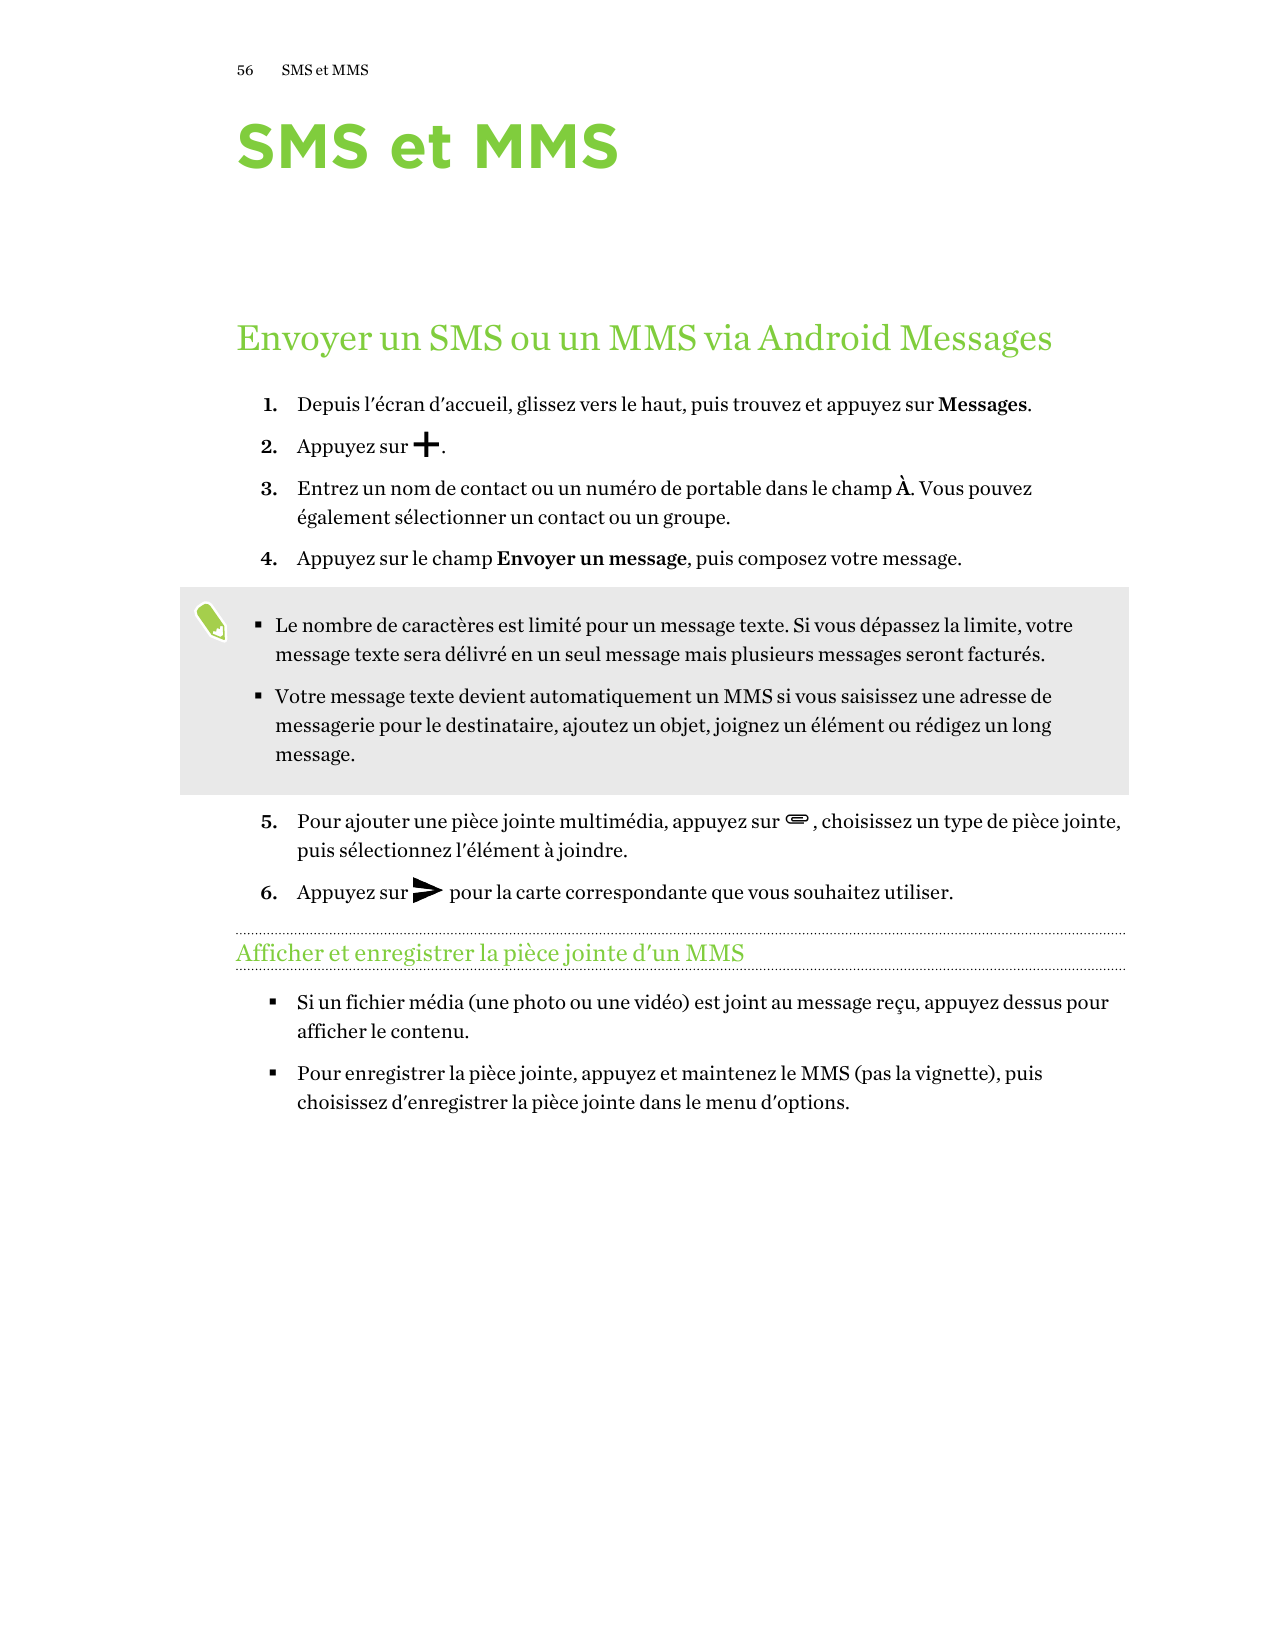 56SMS et MMSSMS et MMSEnvoyer un SMS ou un MMS via Android Messages1. Depuis l'écran d'accueil, glissez vers le haut, puis trouv